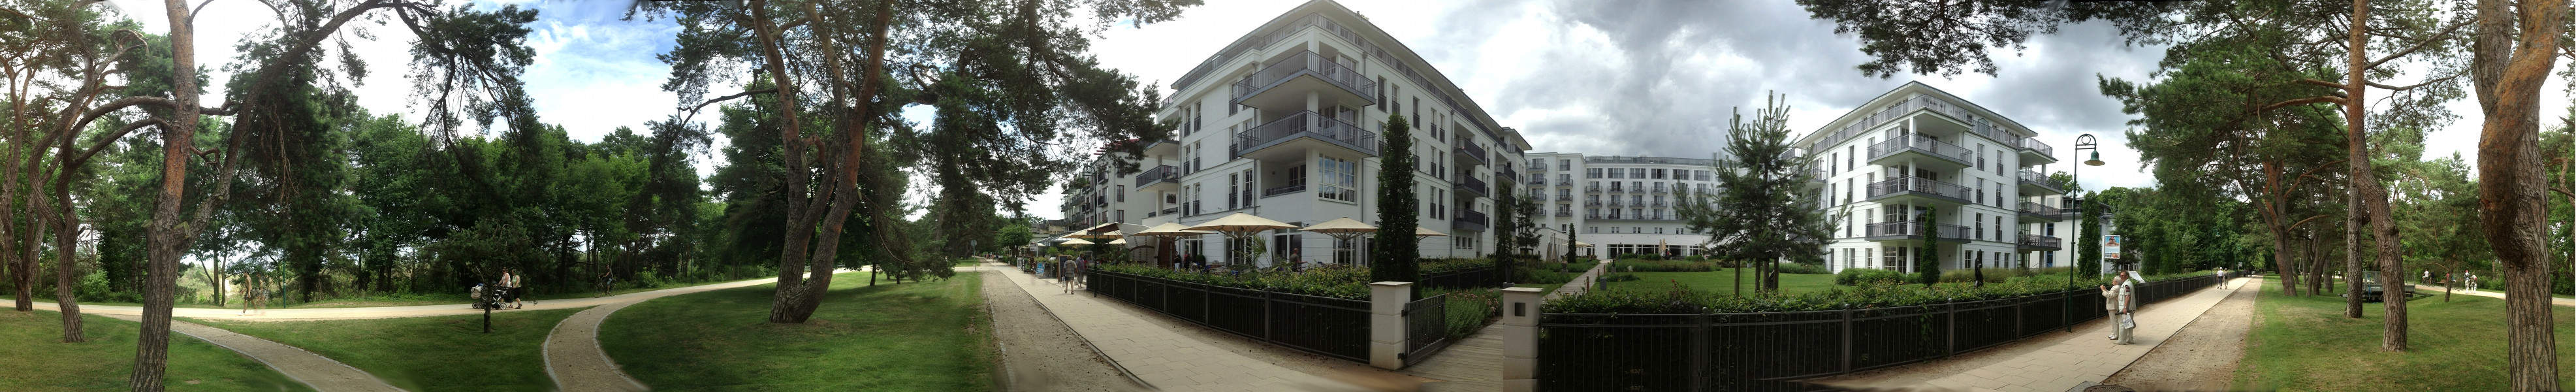 Strandpromenade des Ostseebades Heringsdorf: Kempinski-Hotel.